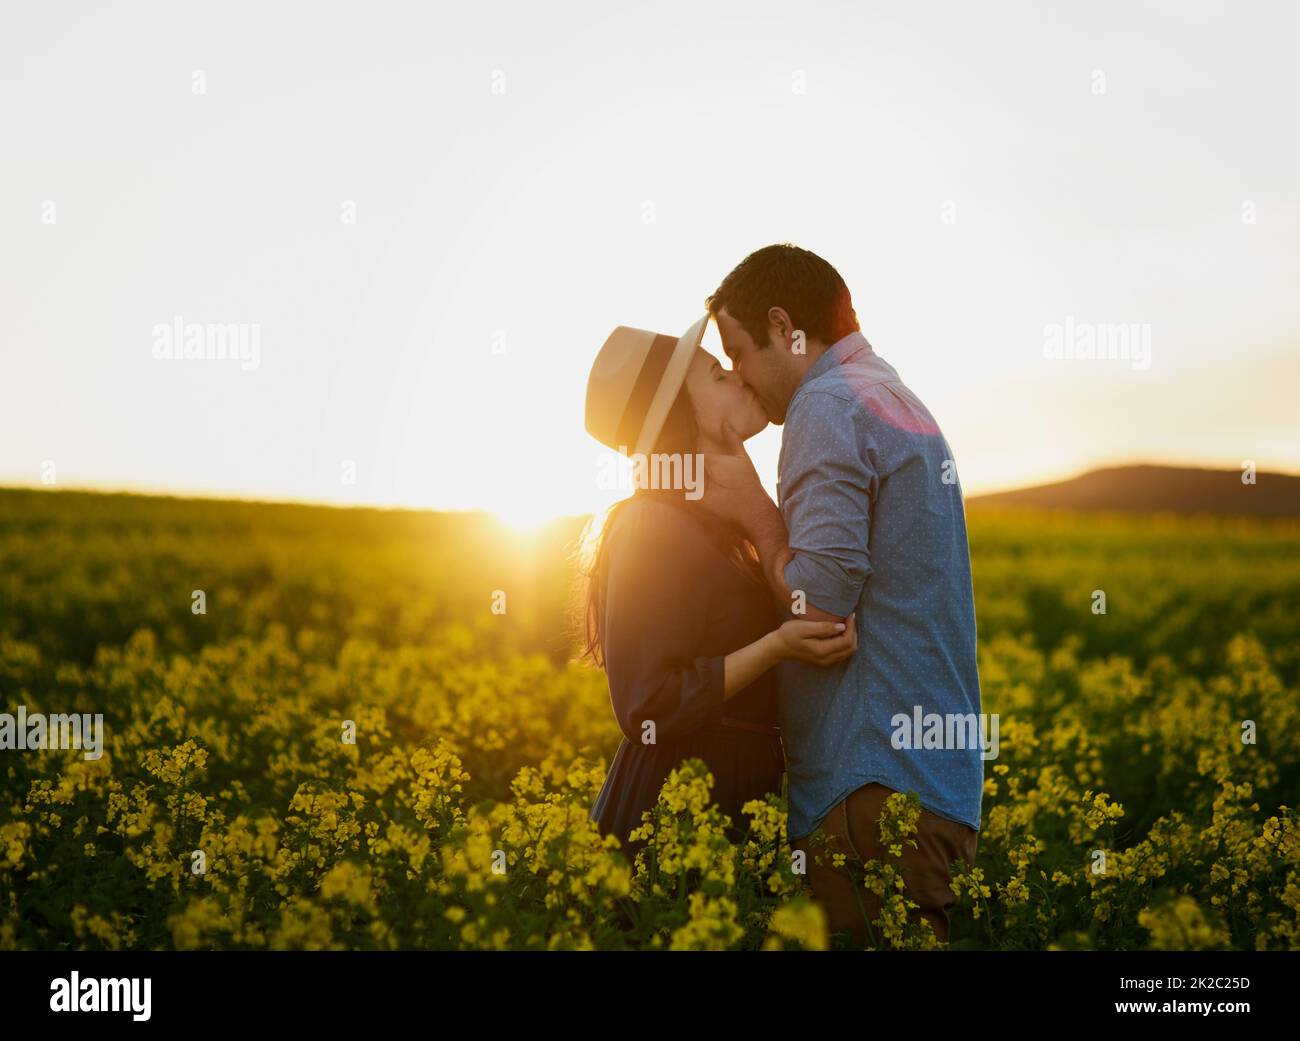 Partager un moment magique ensemble. Photo d'un jeune couple affectueux partageant un baiser au coucher du soleil. Banque D'Images